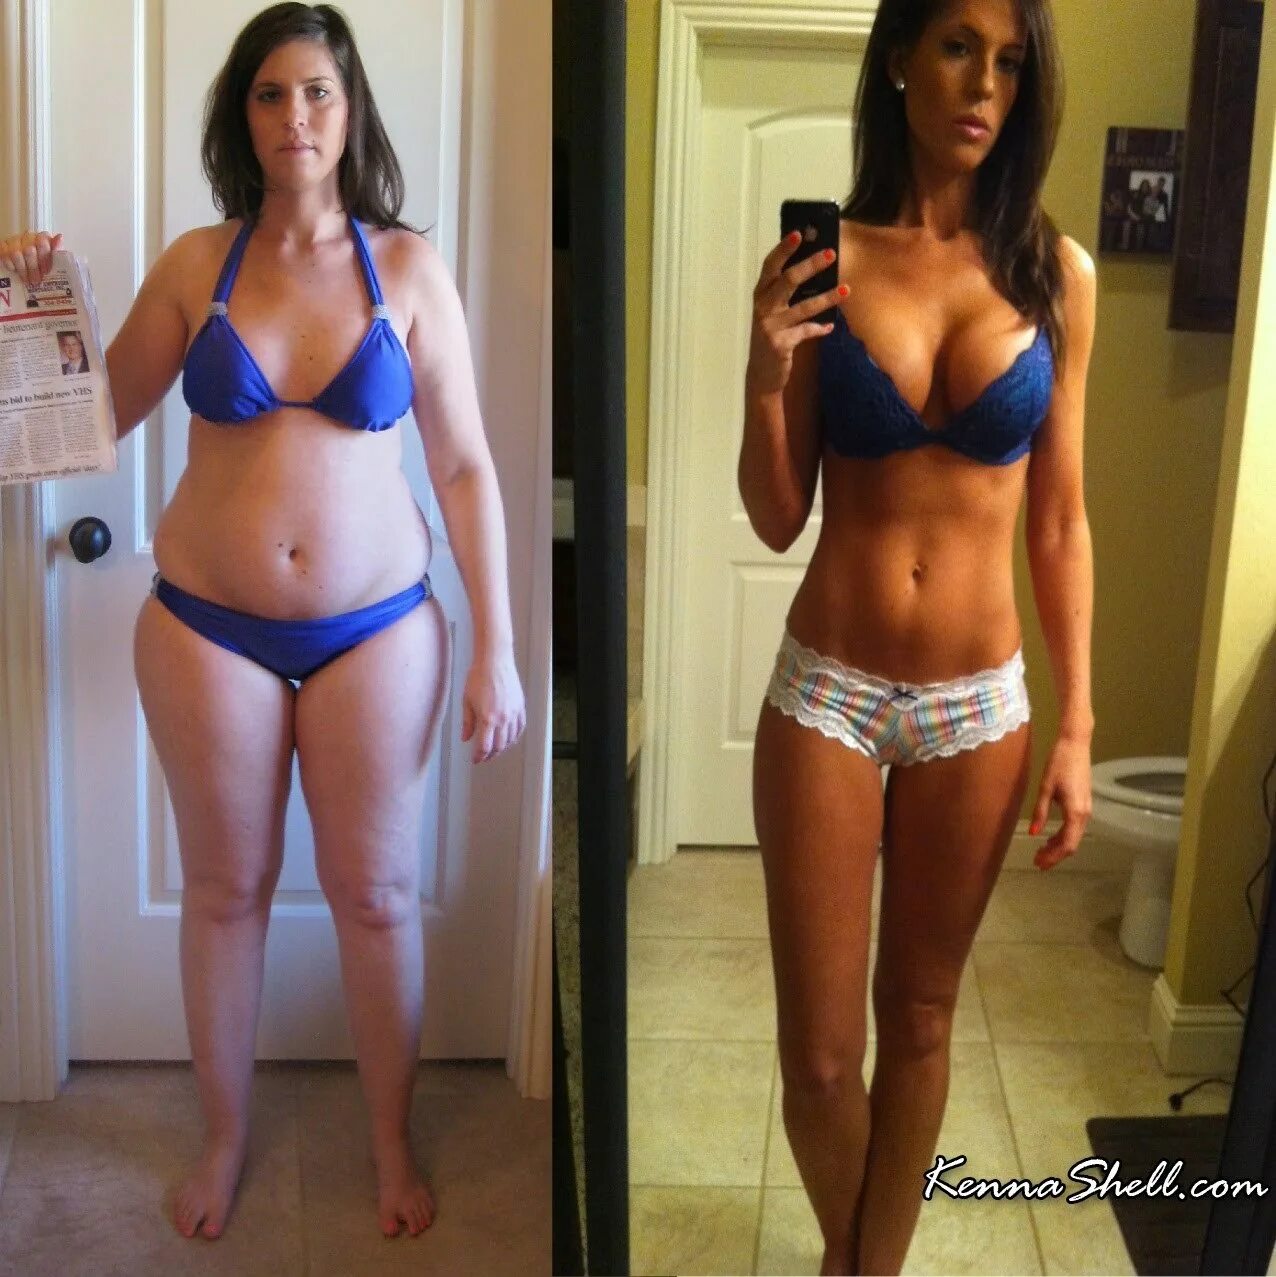 40 кг 20 г. Фигура до и после. Фигура до и после похудения. До и после похудения девушки. Женская фигура до и после.